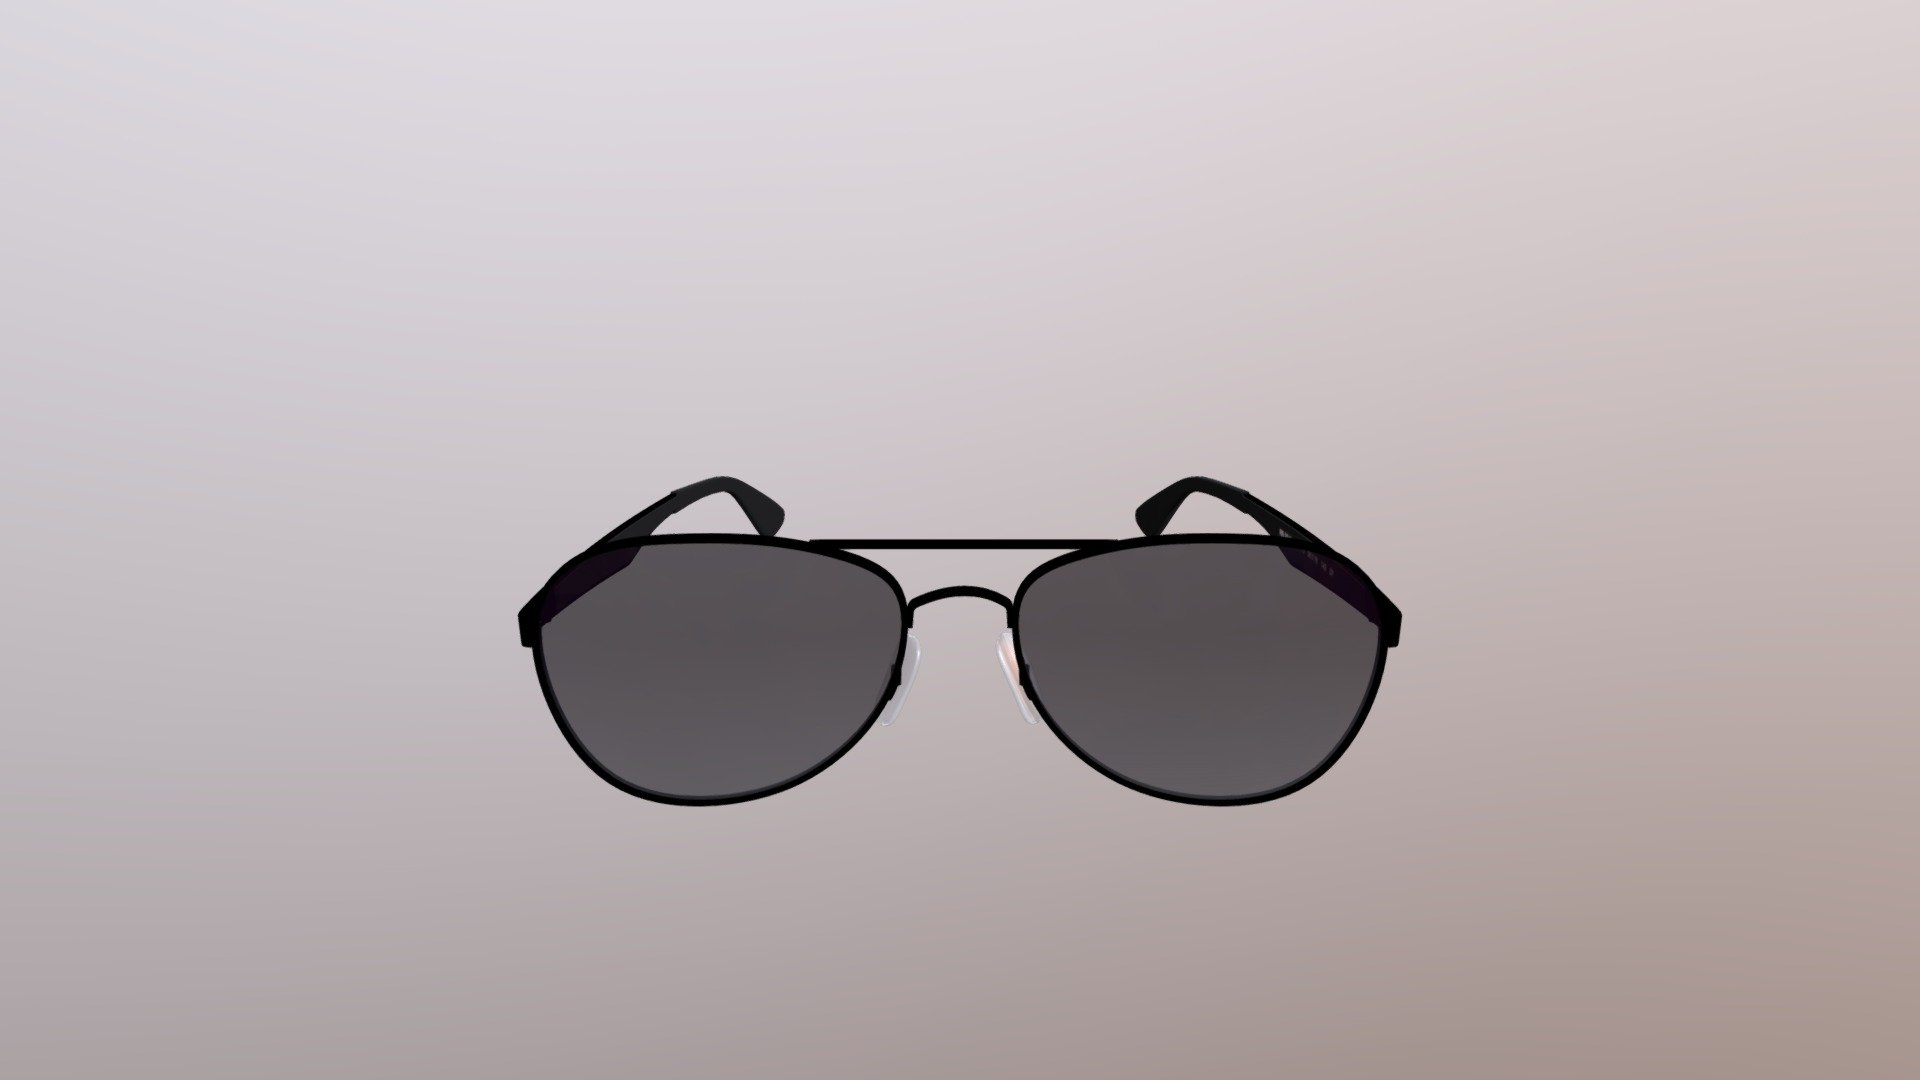 Black Gradient Sunglasses